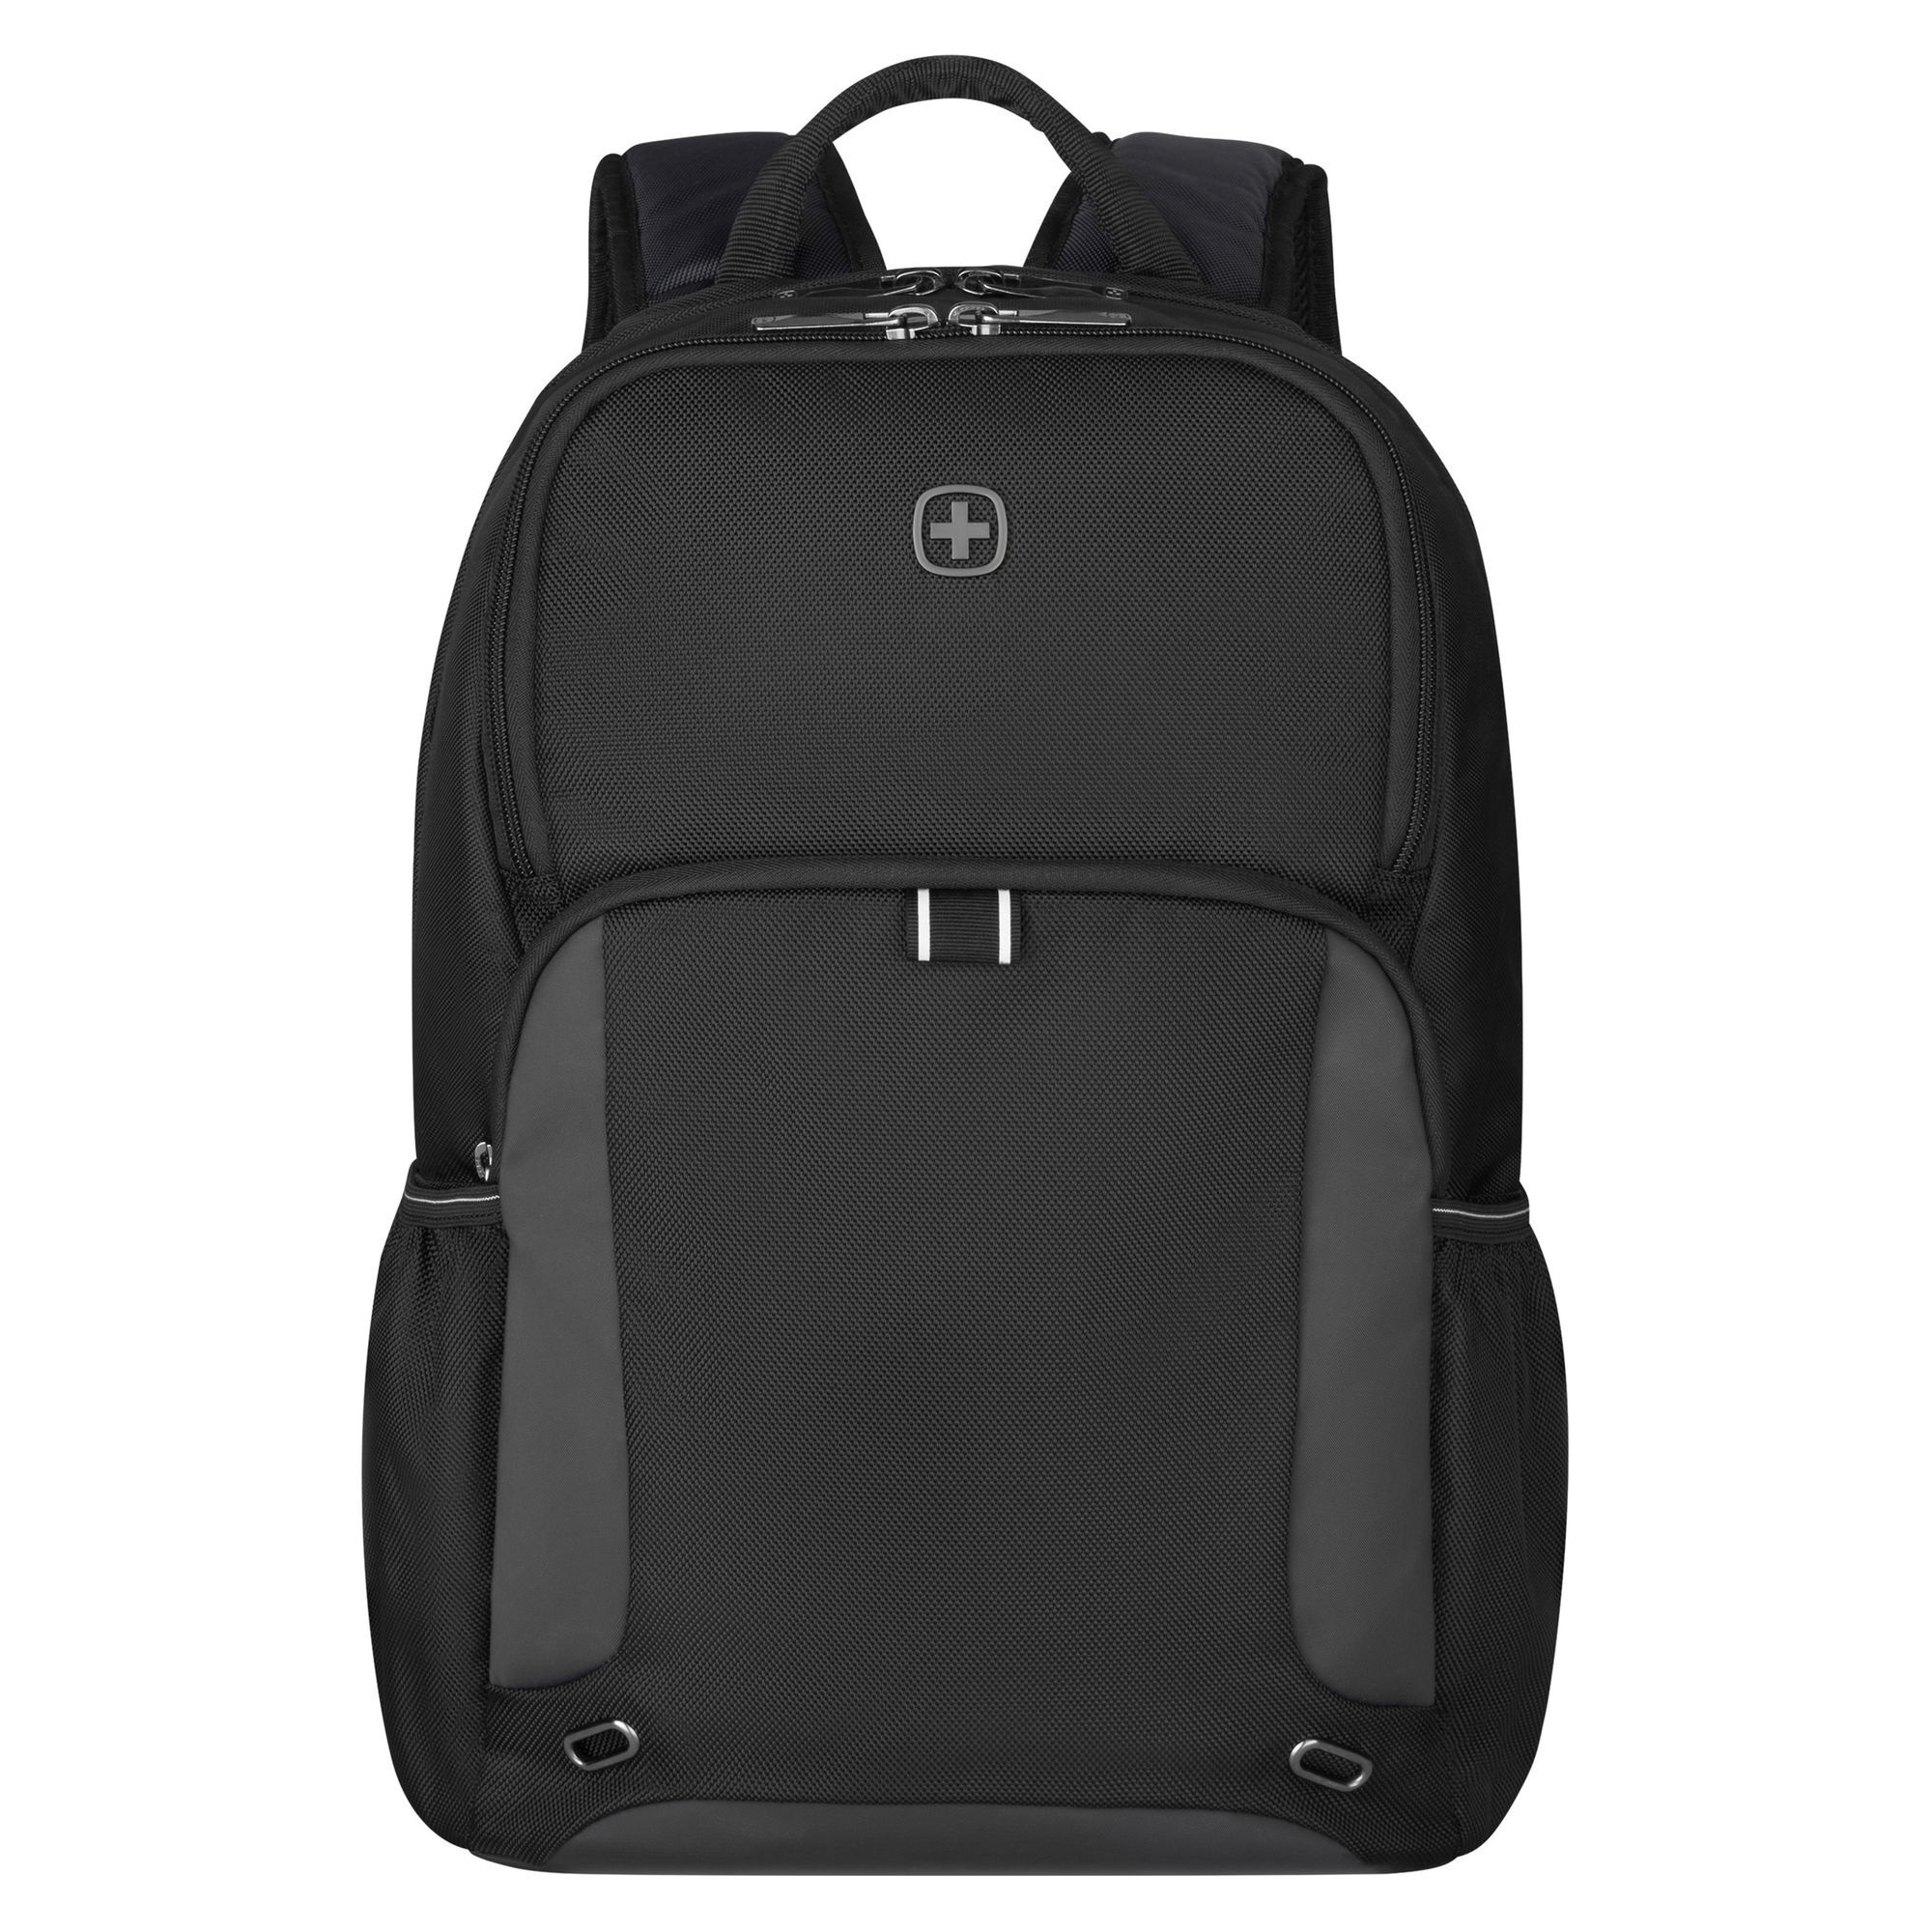 Рюкзак Wenger XE Tryal 44 cm Laptopfach, черный рюкзак wenger crango 46 cm laptopfach цвет gravity black